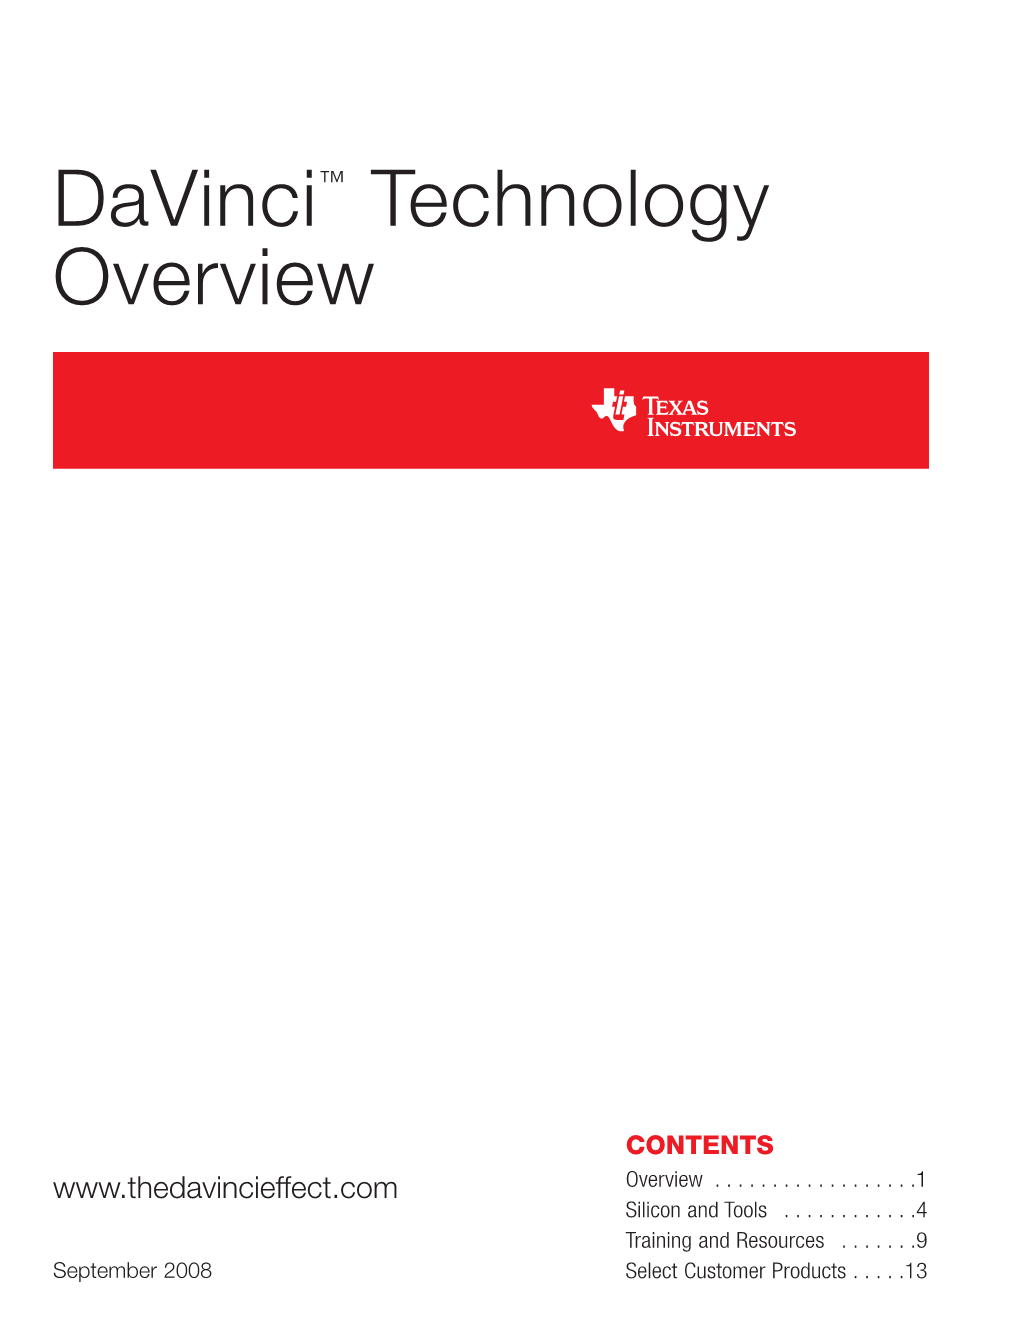 Davinci Technology Overview Brochure